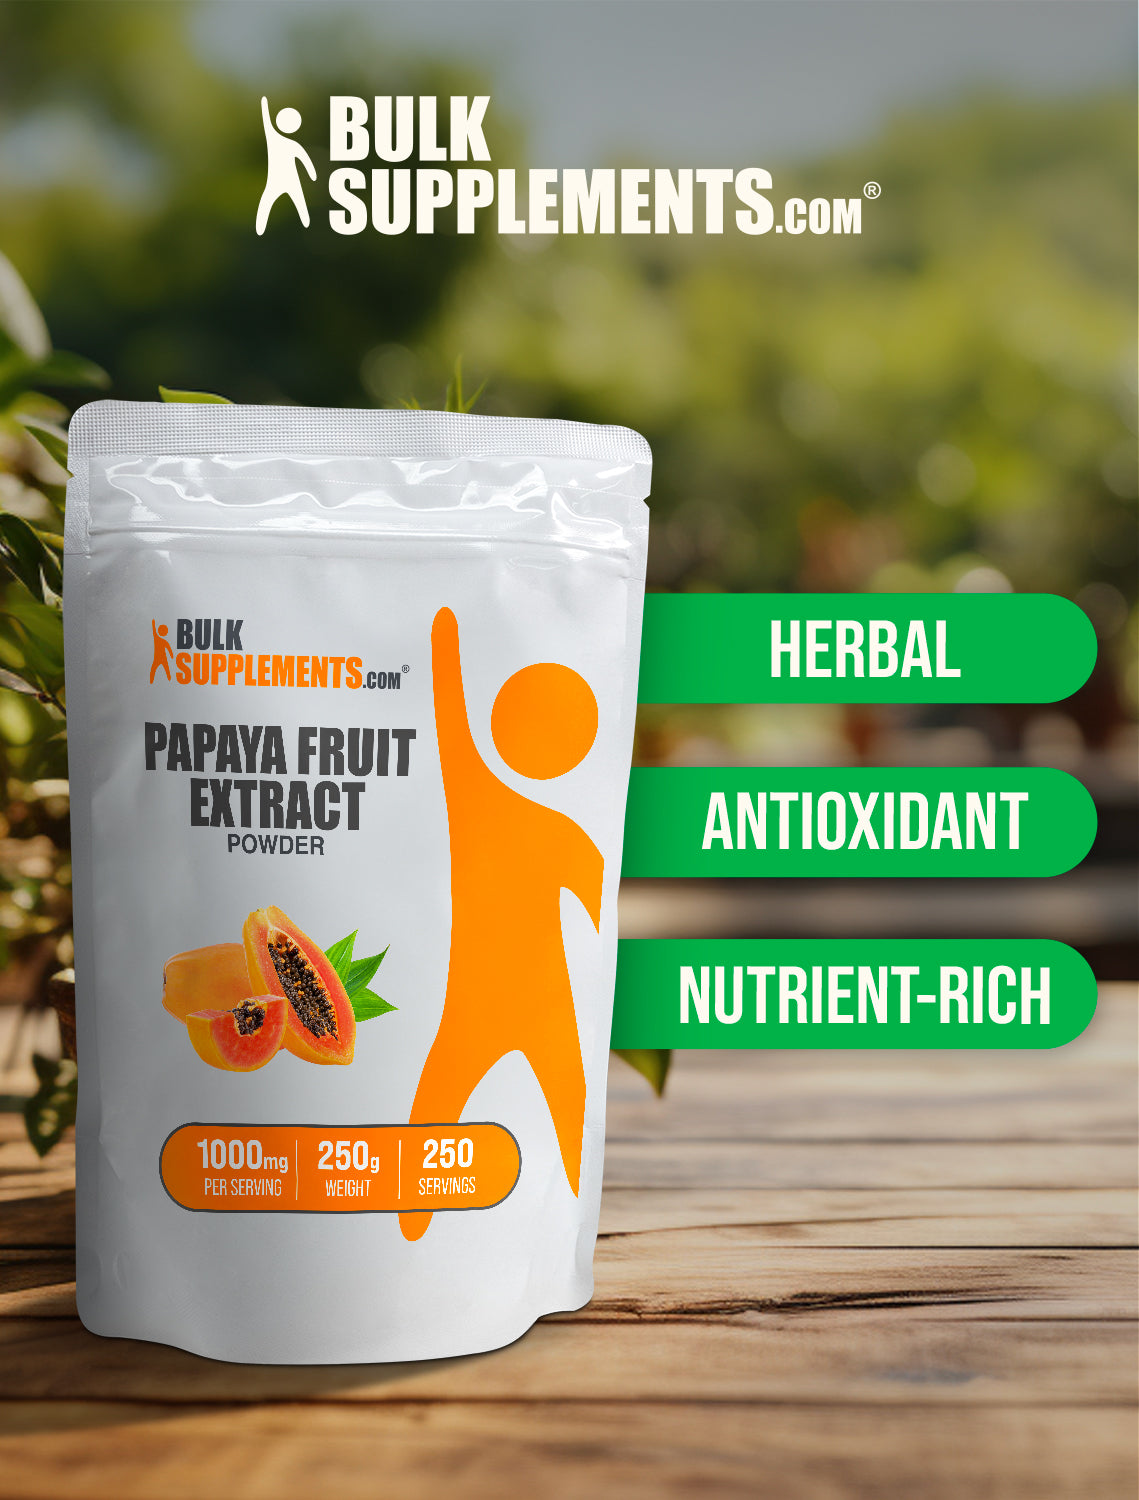 Papaya fruit extract powder 250g keywords image